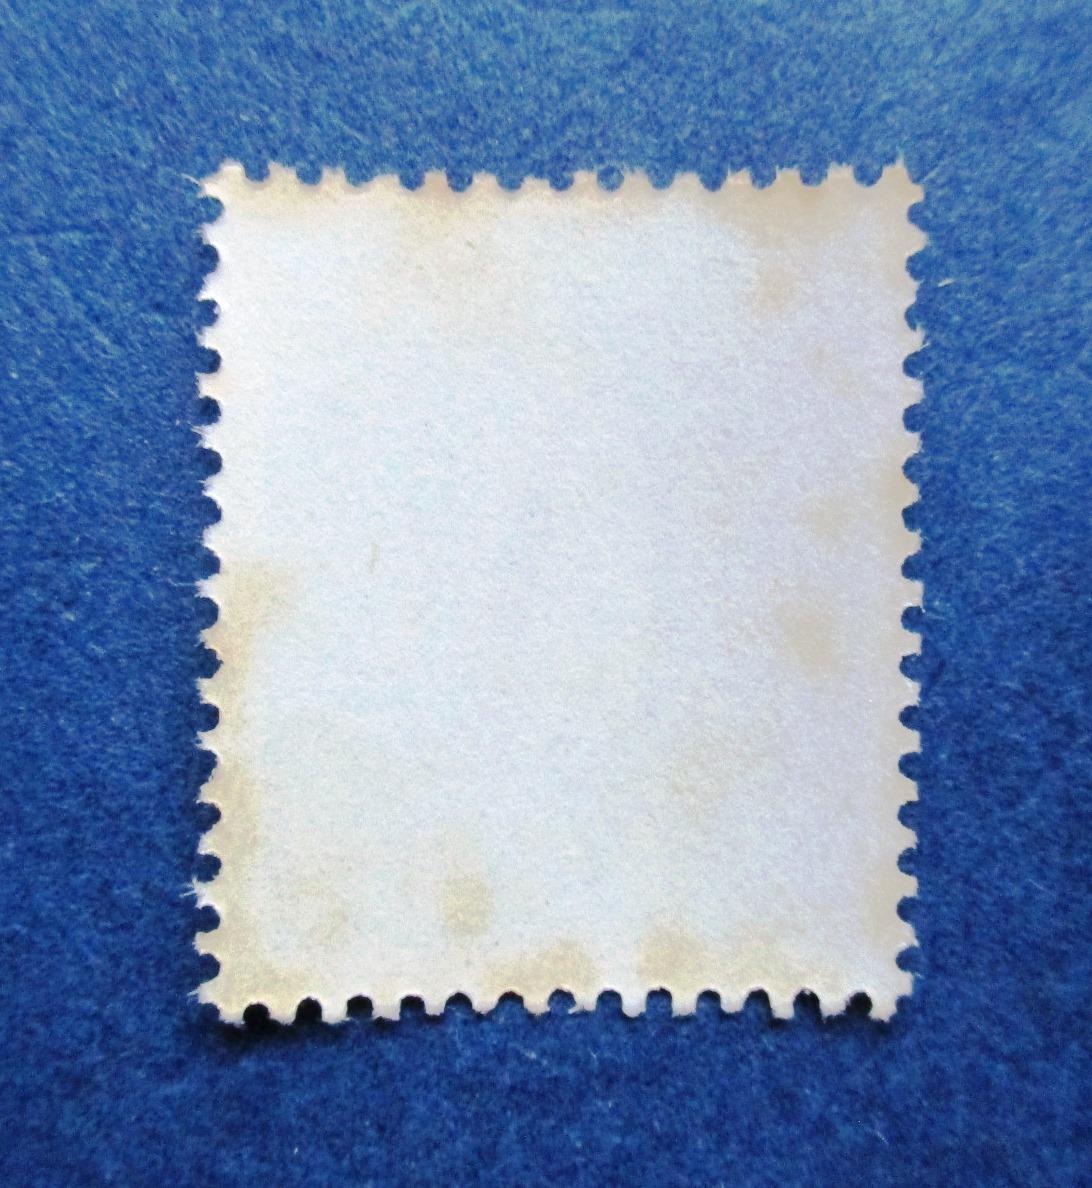 沖縄切手・琉球切手 第1次動植物シリーズ ツノダシ 3￠切手。 BB17 ほぼ美品ですが、肉眼で微かに見えるシミがあります。画像参照の画像4